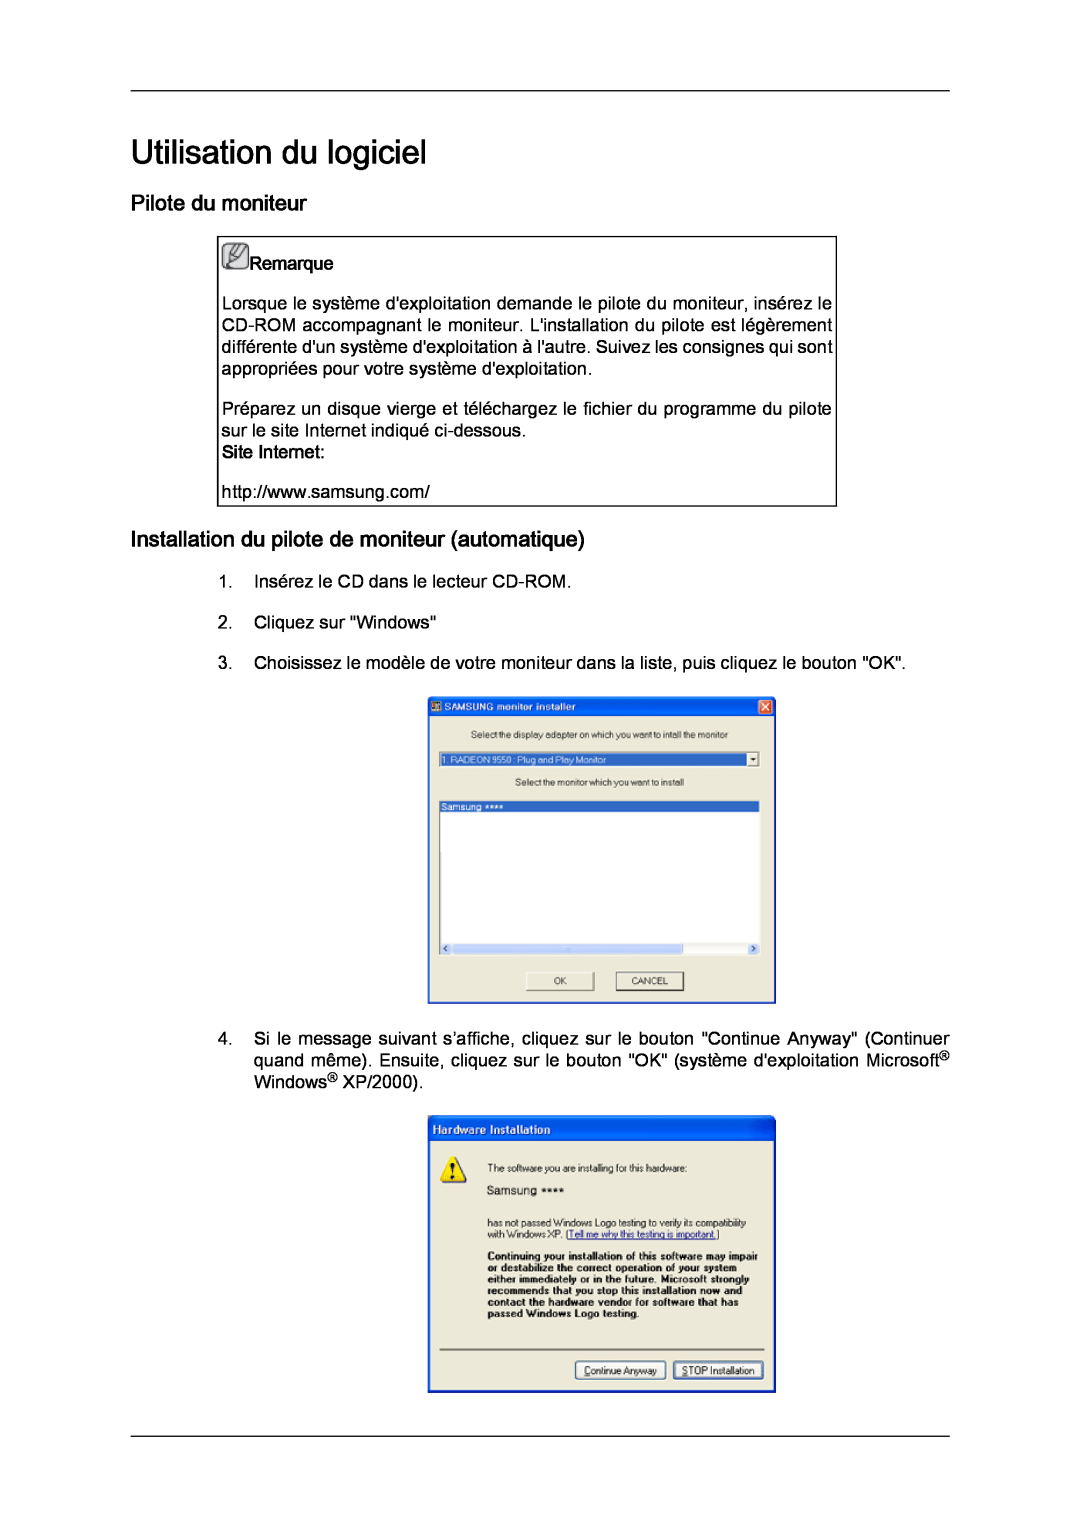 Samsung LH46CRPMBC/EN manual Utilisation du logiciel, Pilote du moniteur, Installation du pilote de moniteur automatique 